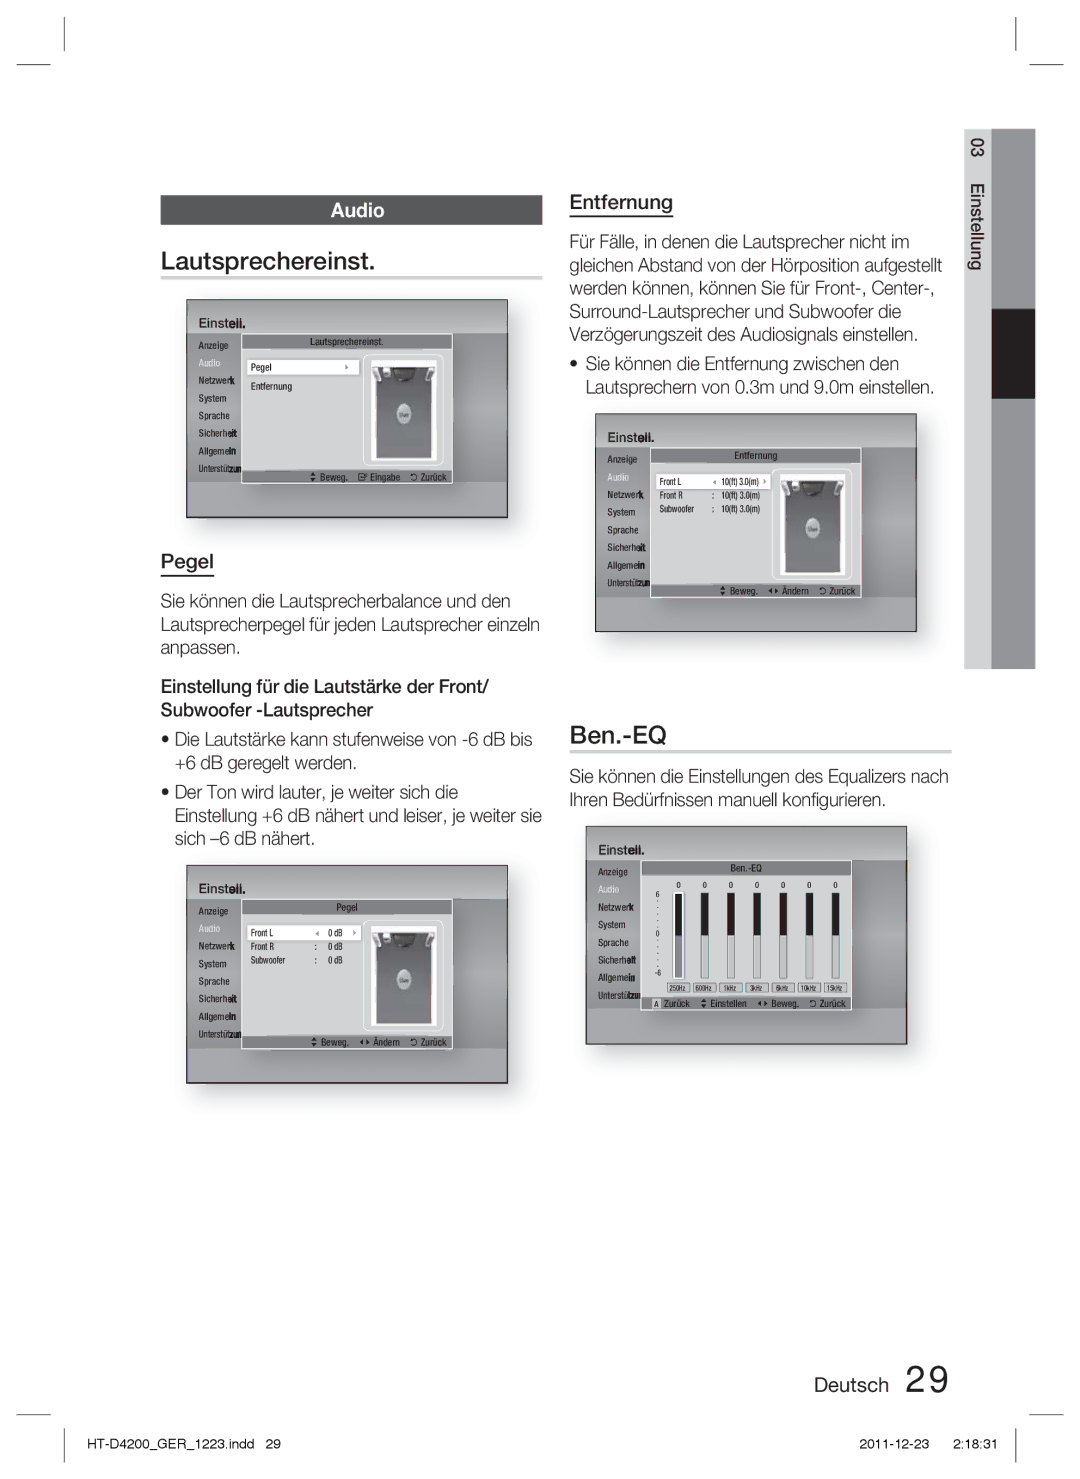 Samsung HT-D4200/XN manual Lautsprechereinst, Ben.-EQ, Pegel, Entfernung, Für Fälle, in denen die Lautsprecher nicht im 